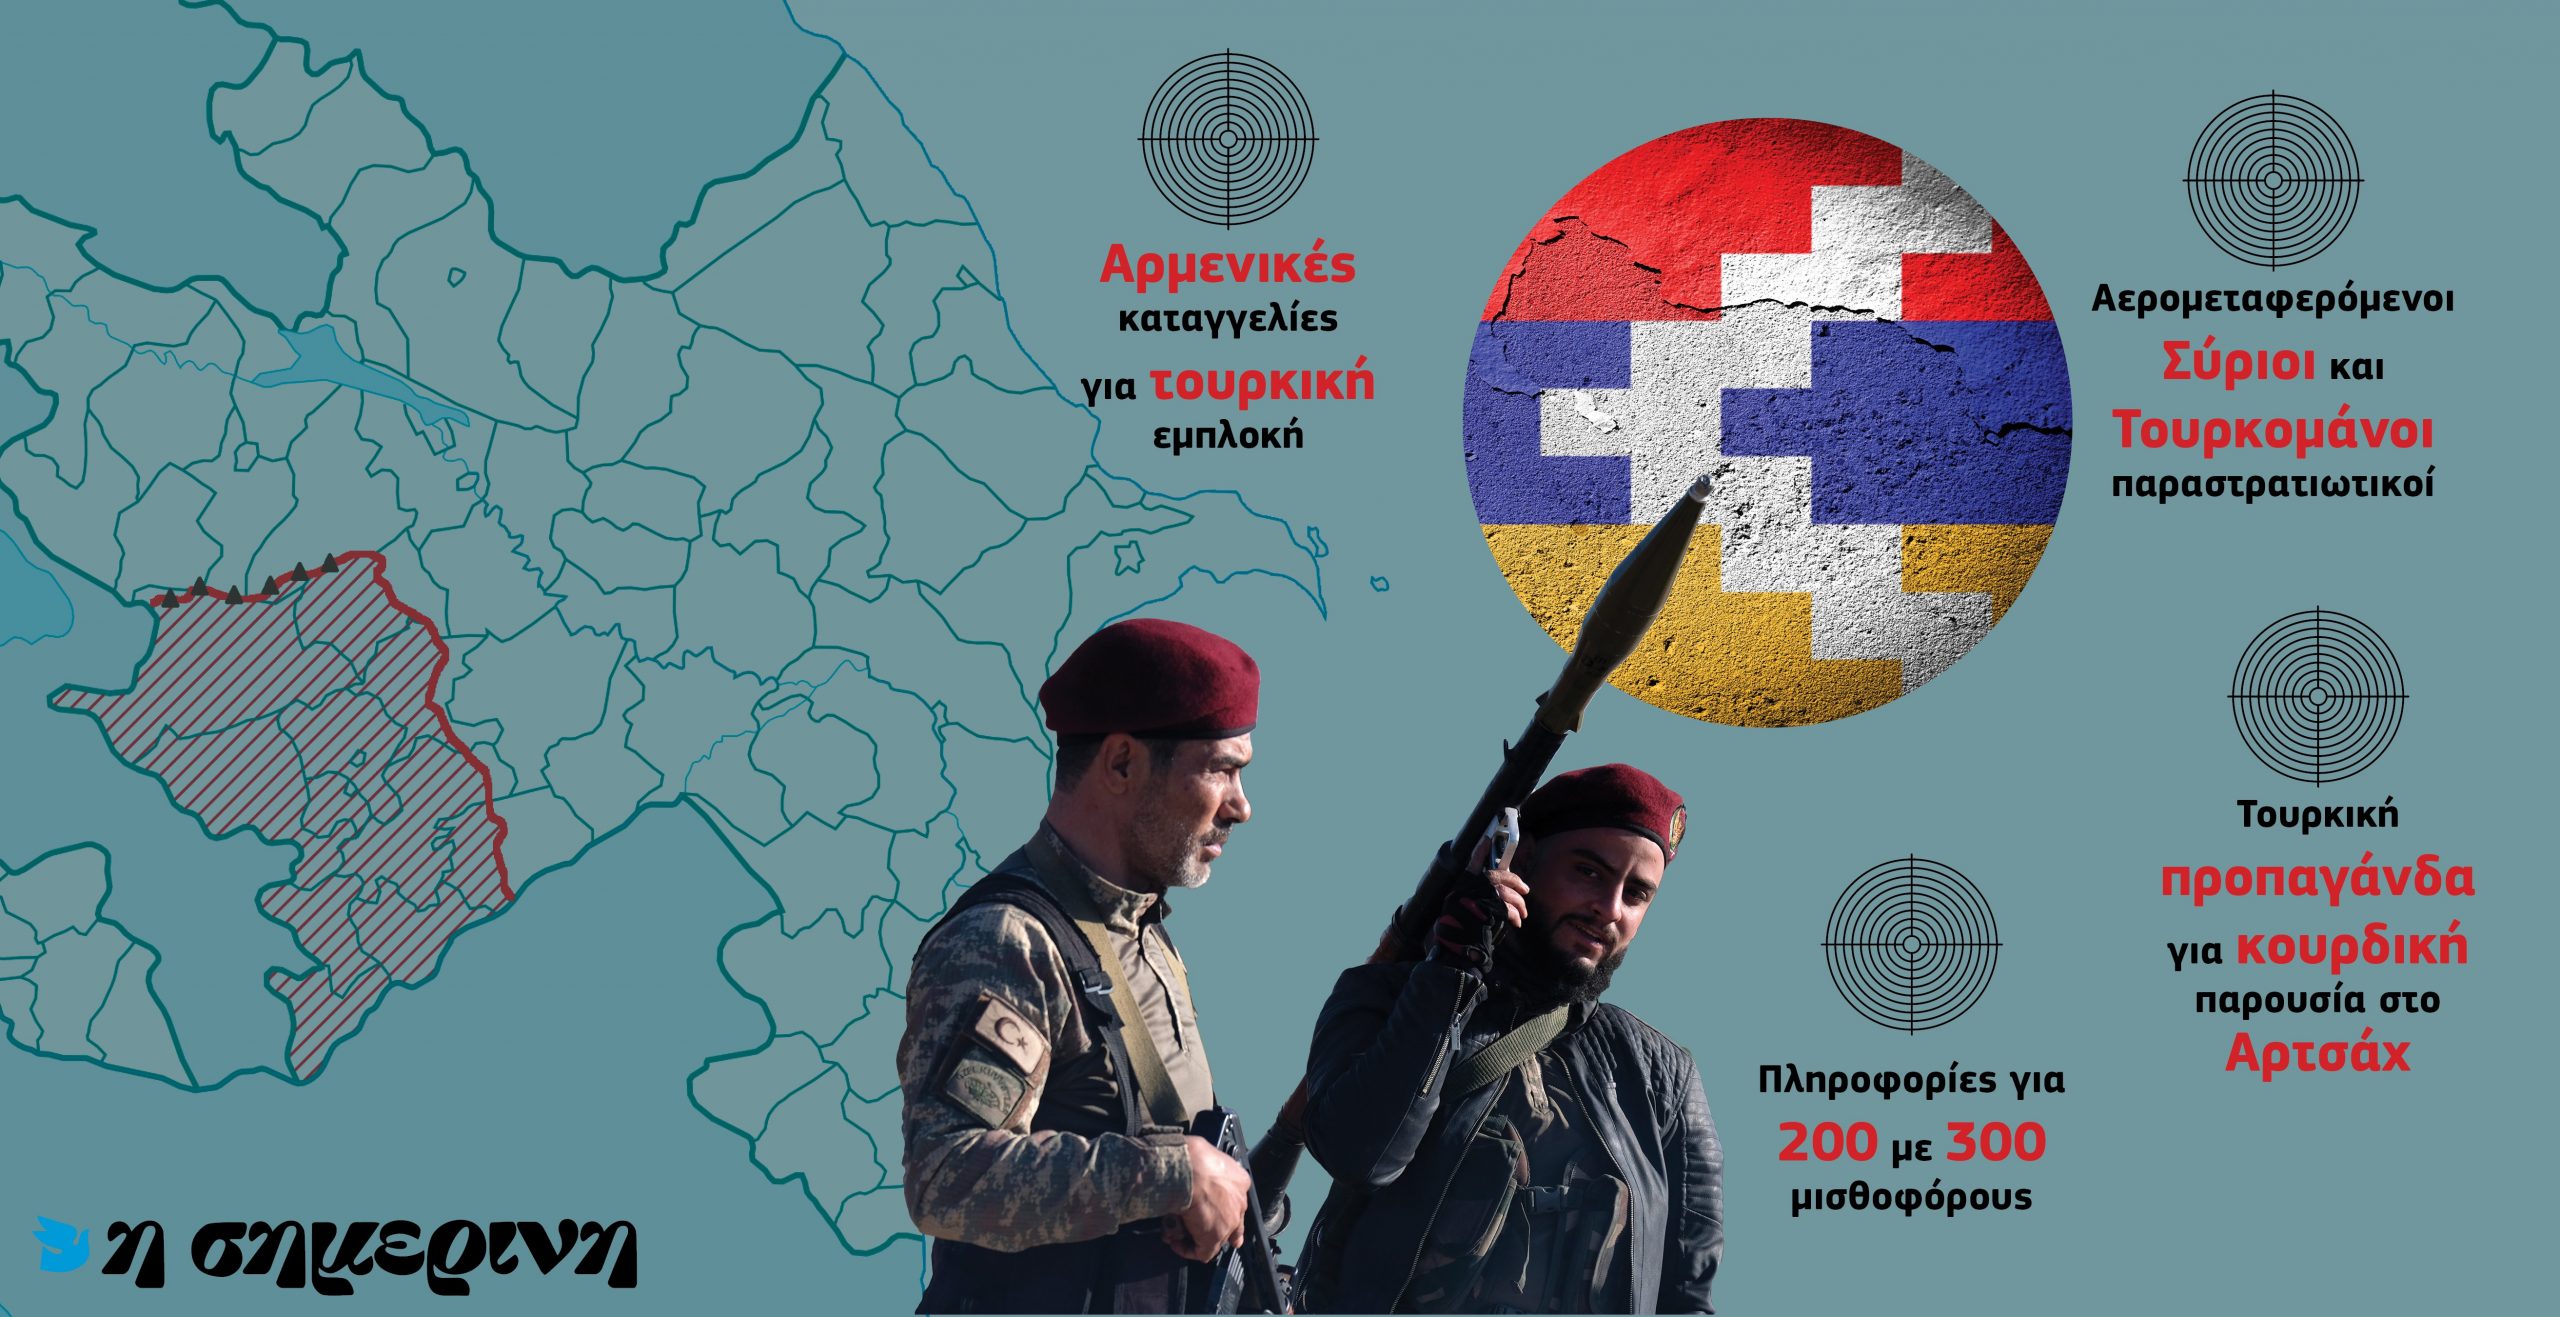 Σύροι και Τουρκομάνοι μισθοφόροι της Τουρκίας στο Αρτσάχ – Προπαγάνδα για συνεργασία Κούρδων-Αρμενίων